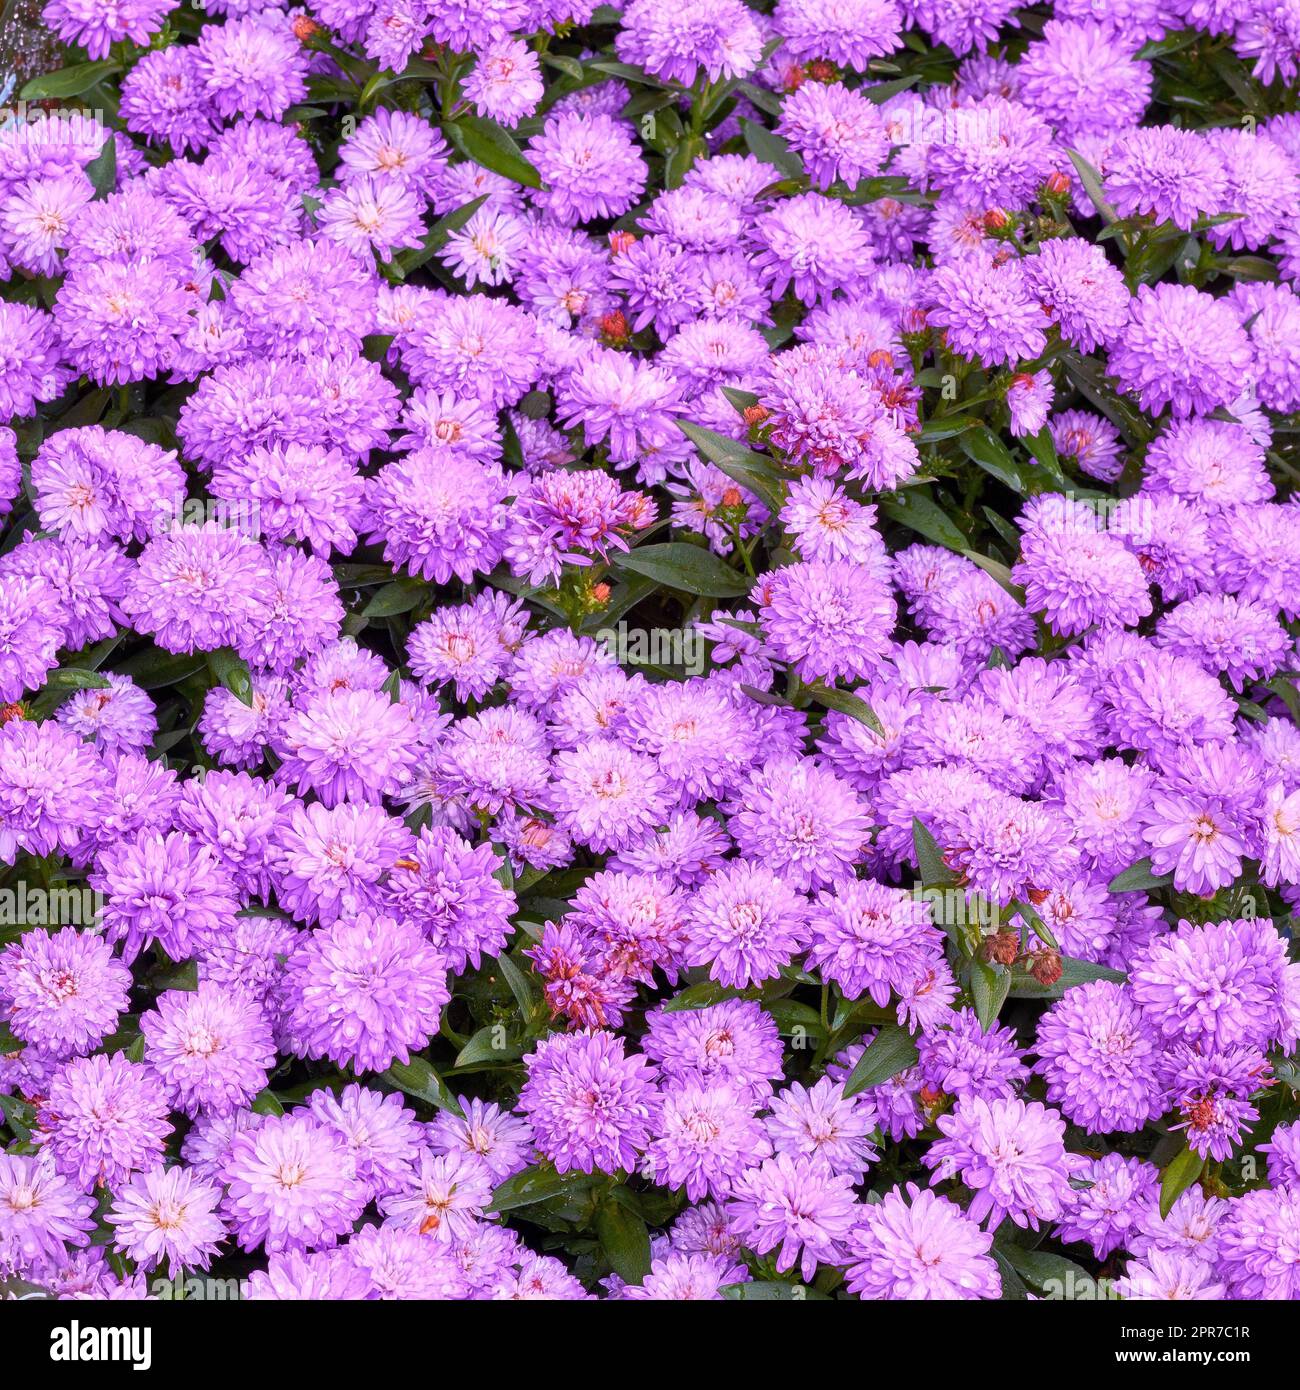 Wunderschöne lila Osterblumen wachsen im botanischen Garten im Freien in der Natur von oben. Helle und lebendige Pflanzen blühen in einer natürlichen Umgebung während der Frühlingssaison. Frische Blumenblumen Stockfoto